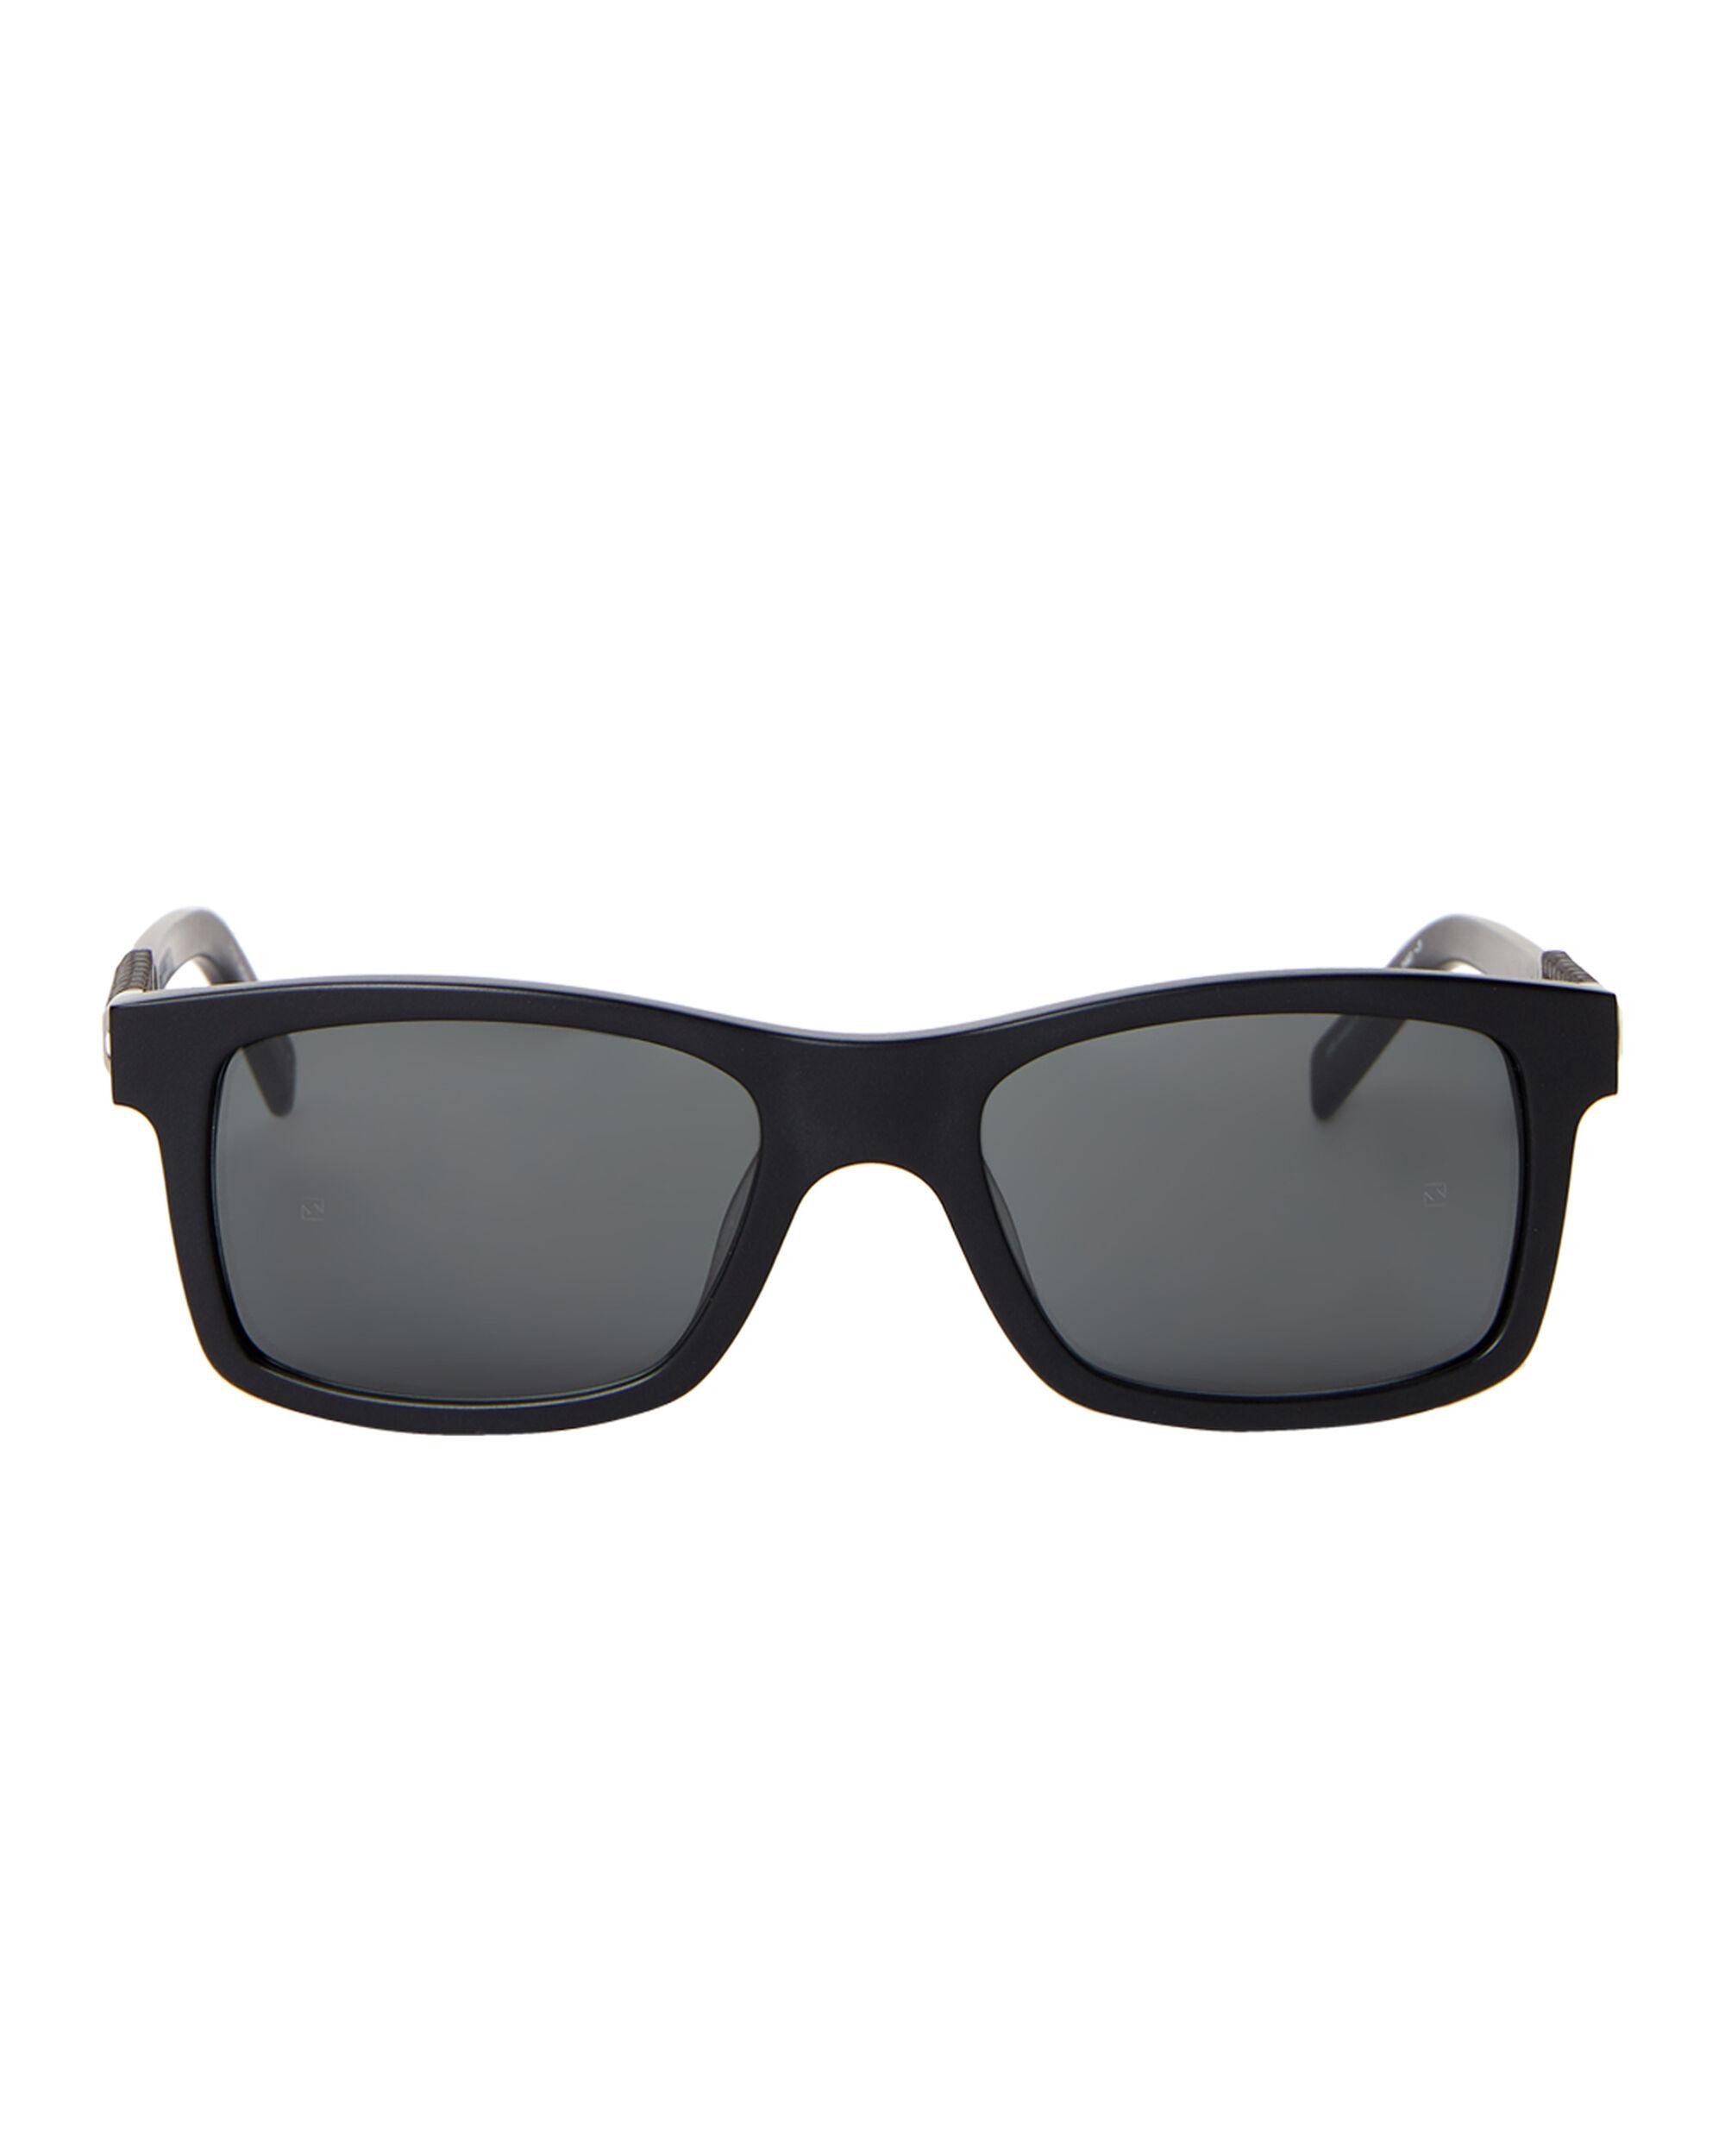 Montblanc Mb646s-f Black Rectangular Sunglasses for Men - Lyst